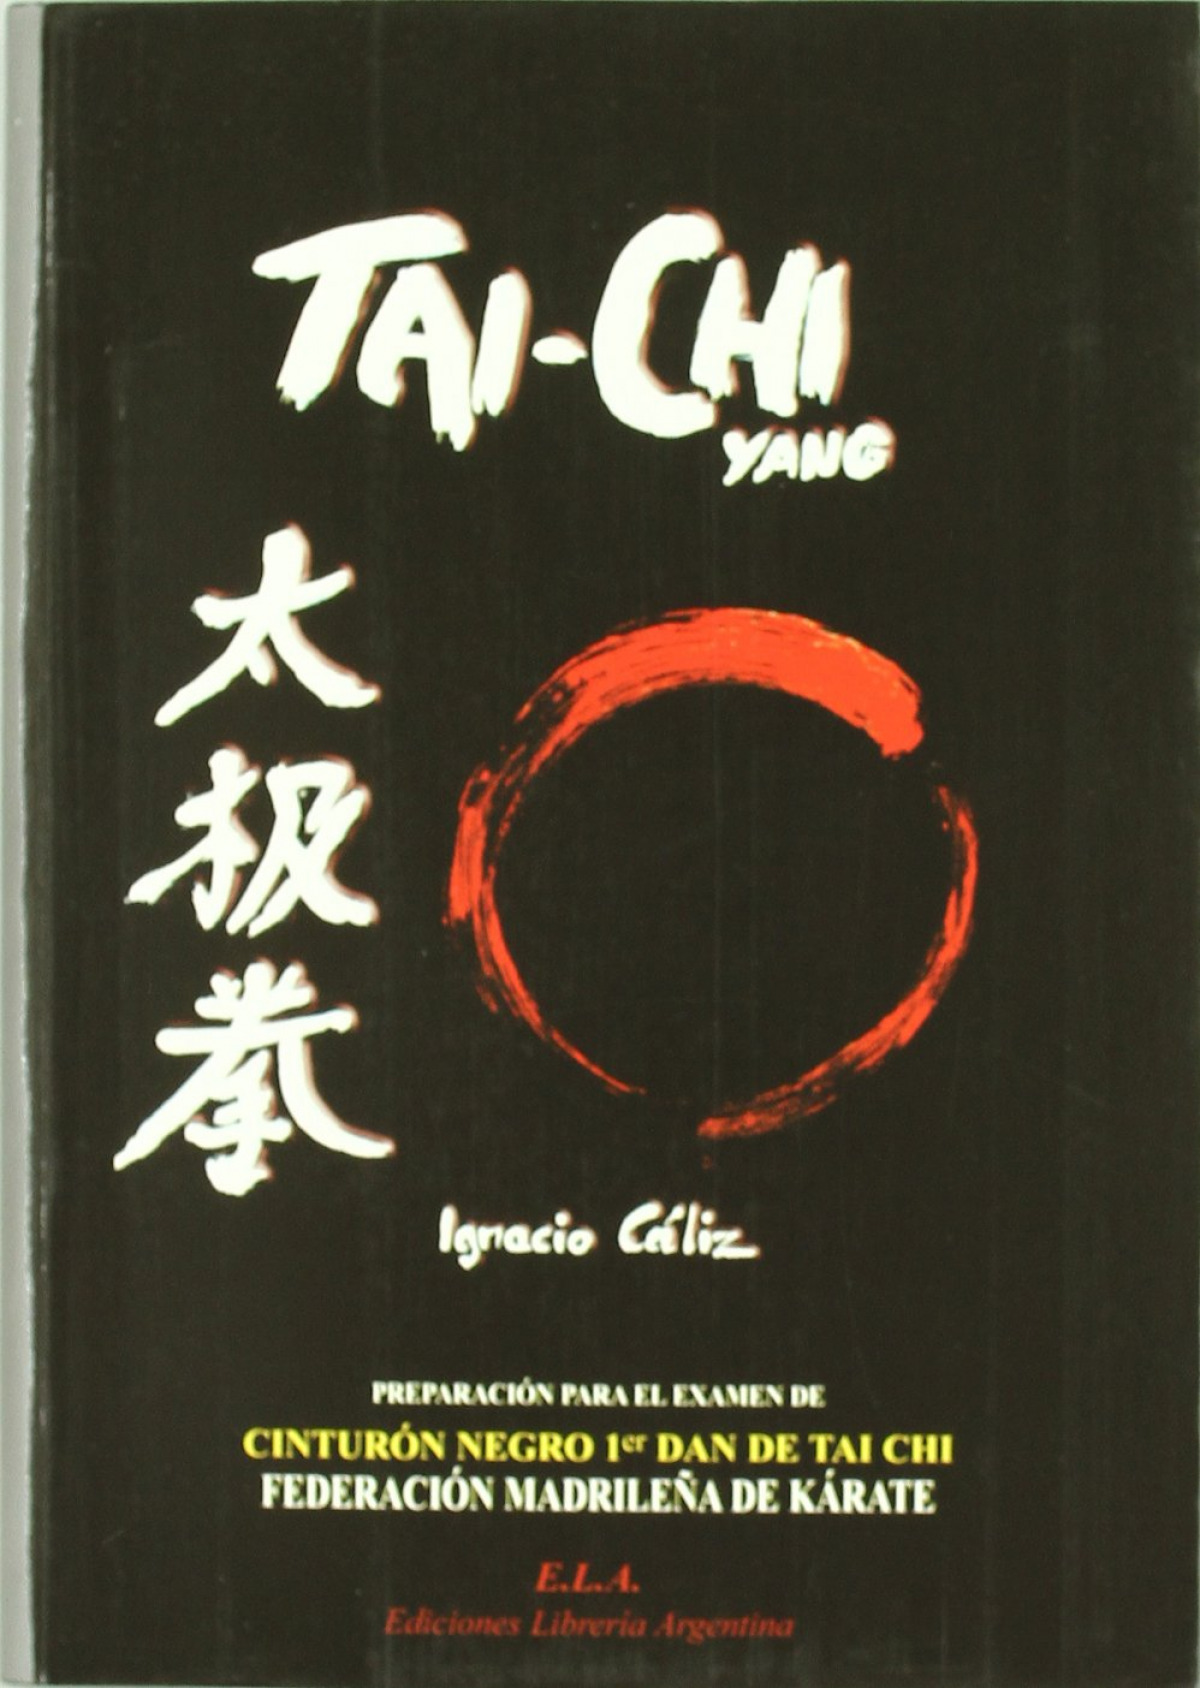 Tai-chi yang DVD Preparación para el examen de cinturón negro 1ºdan de - Cáliz, Ignacio